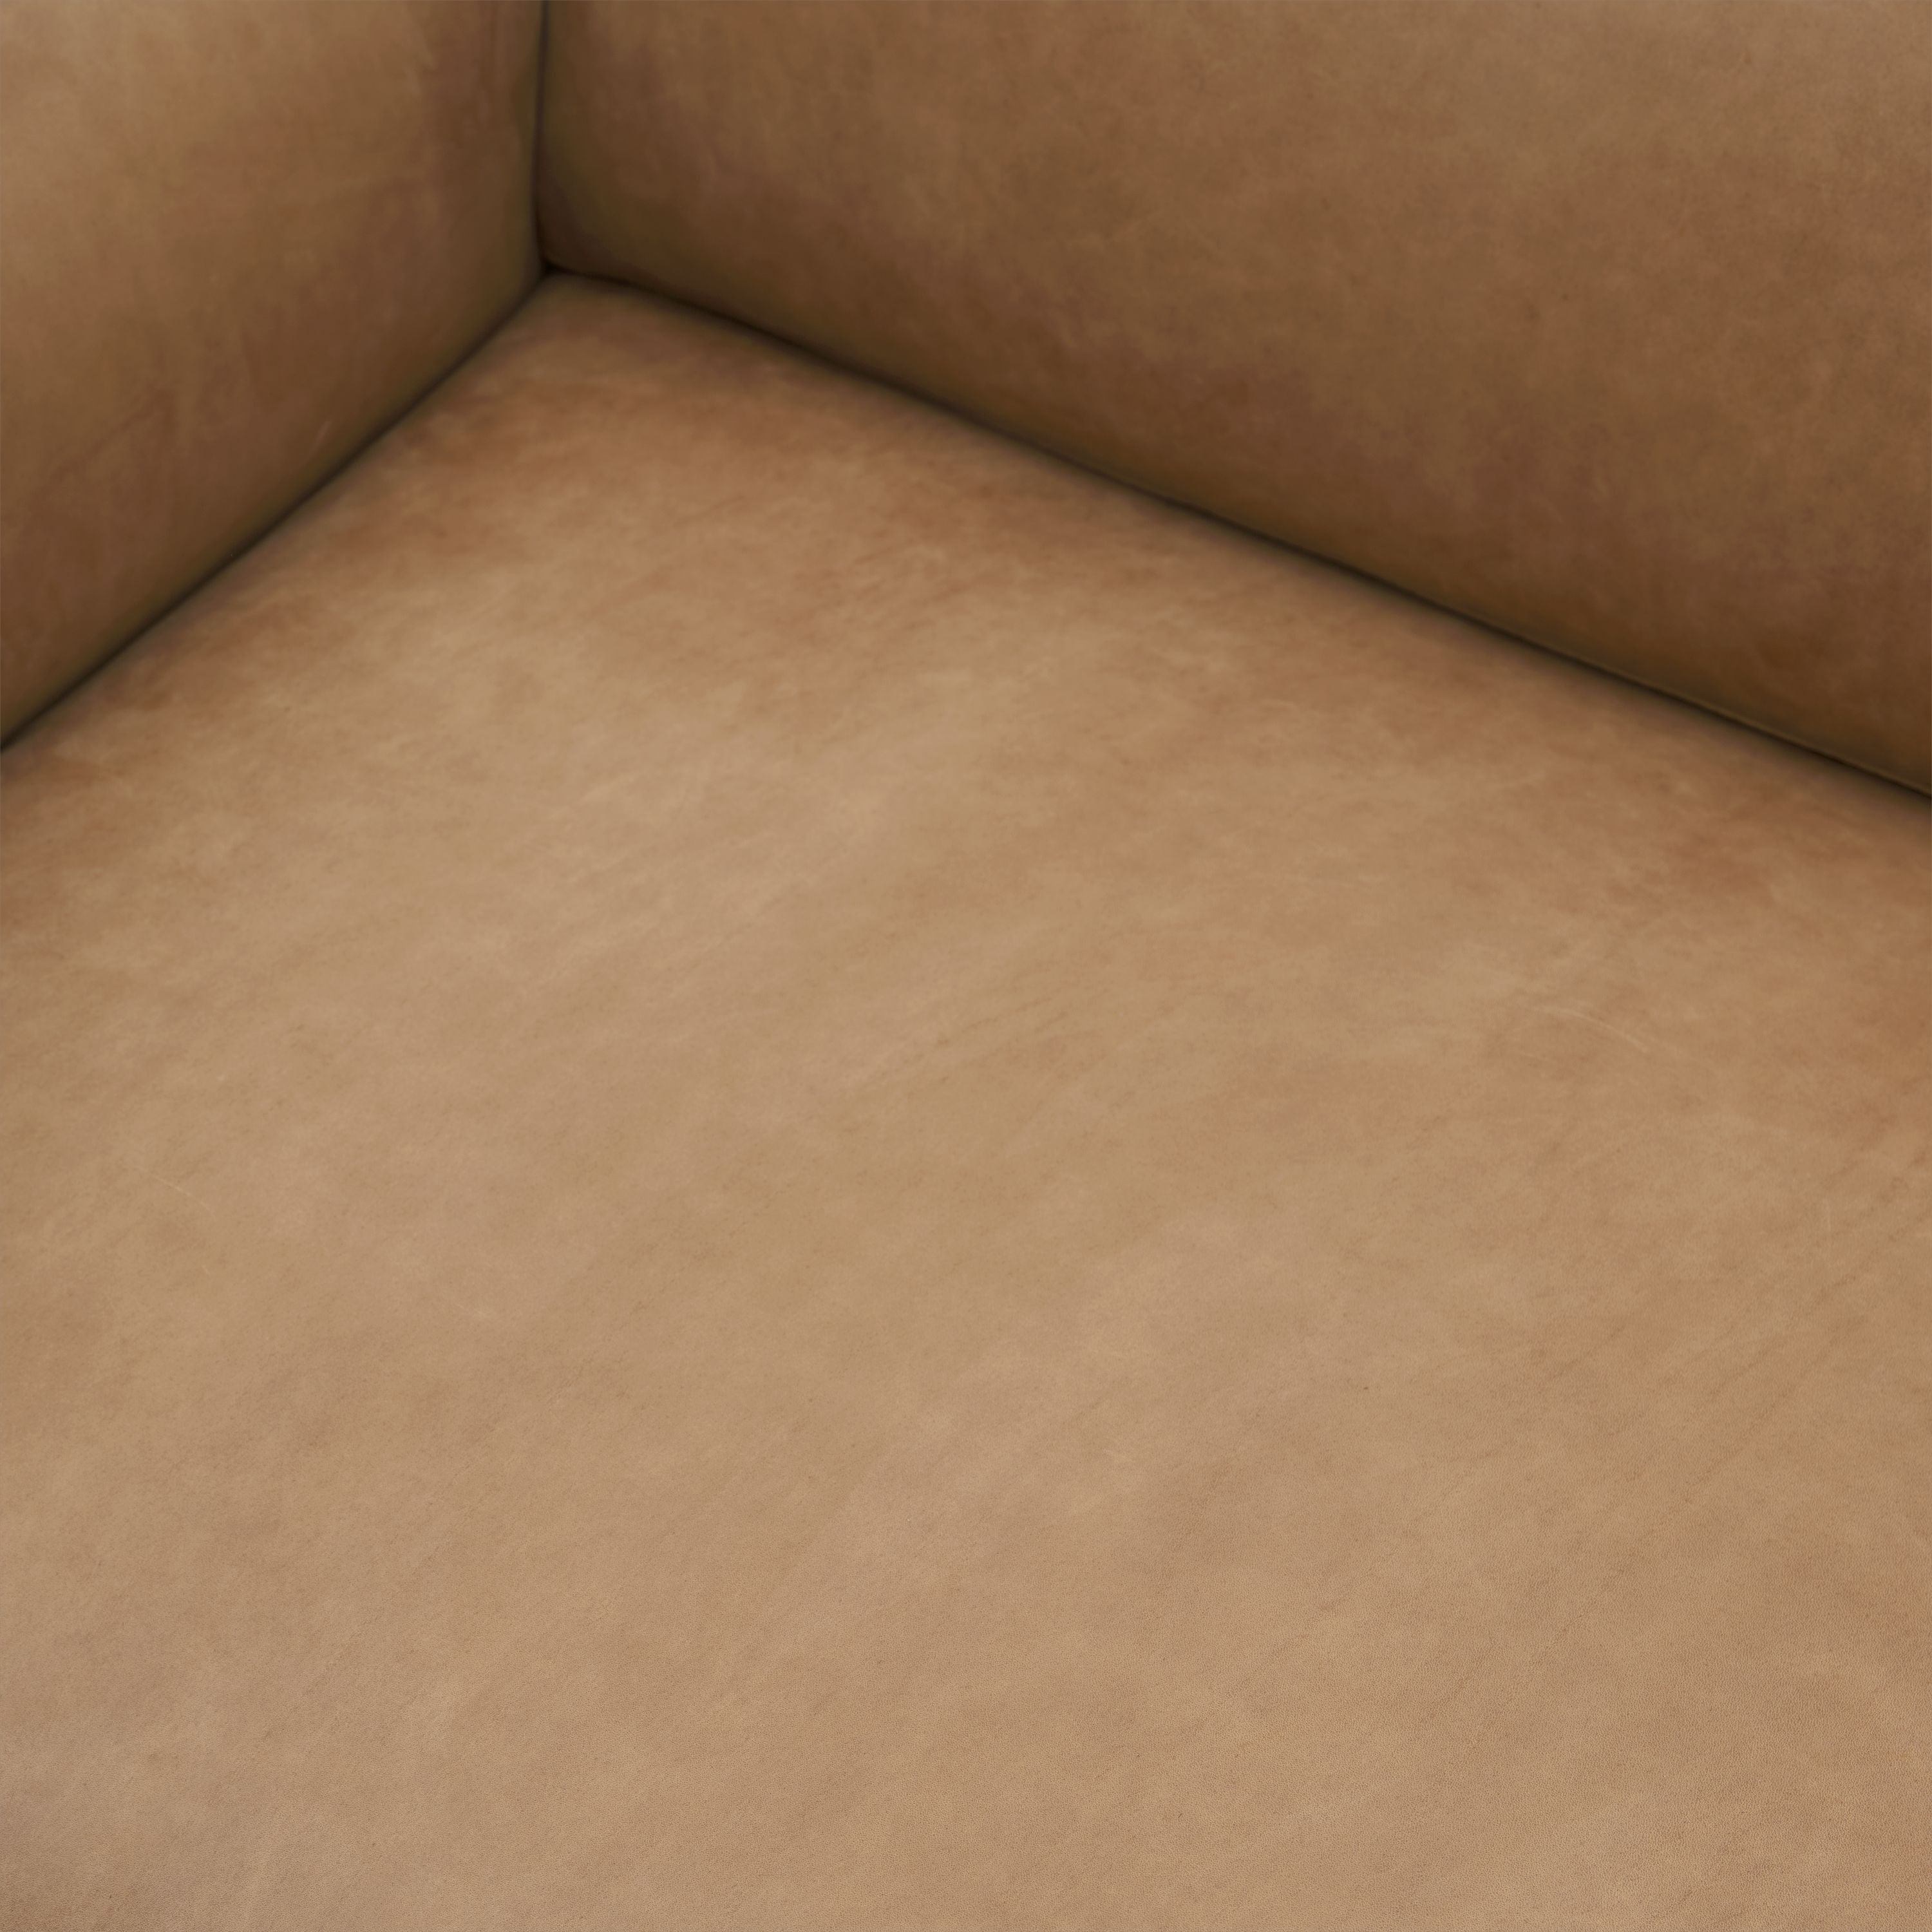 Muuto Outviivan sohva 3 -paikkainen armo nahka, kameli/alumiini